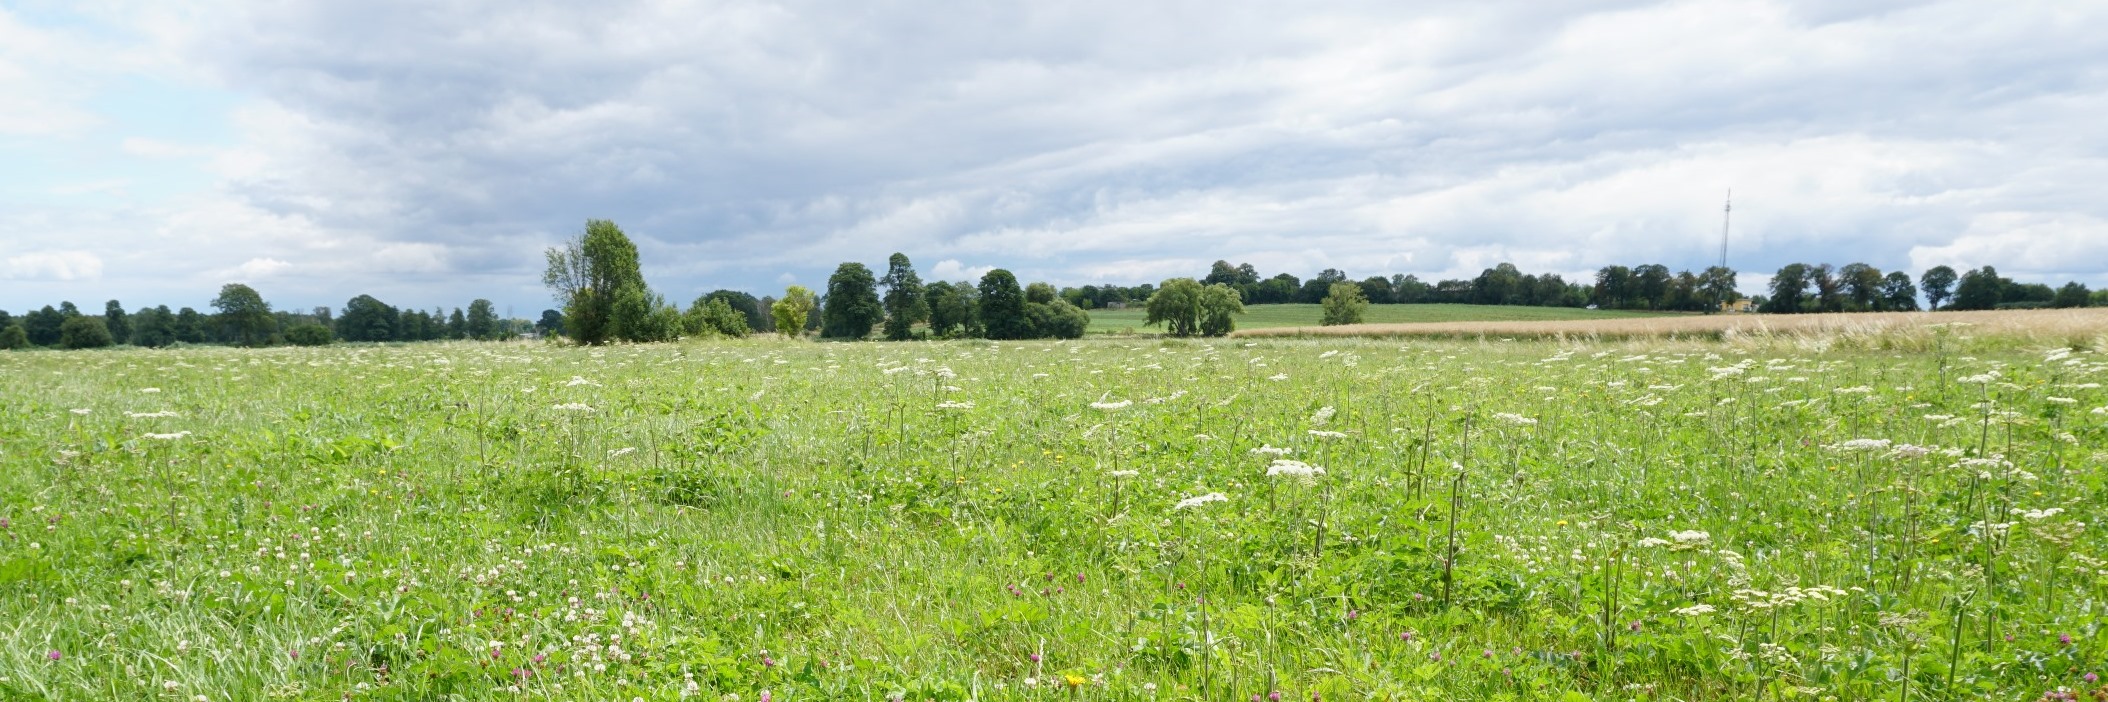 Das Foto zeigt eine blühende Wiese, die im Hintergrund von einem Getreidefeld und einer Baumreihe begrenzt wird.  